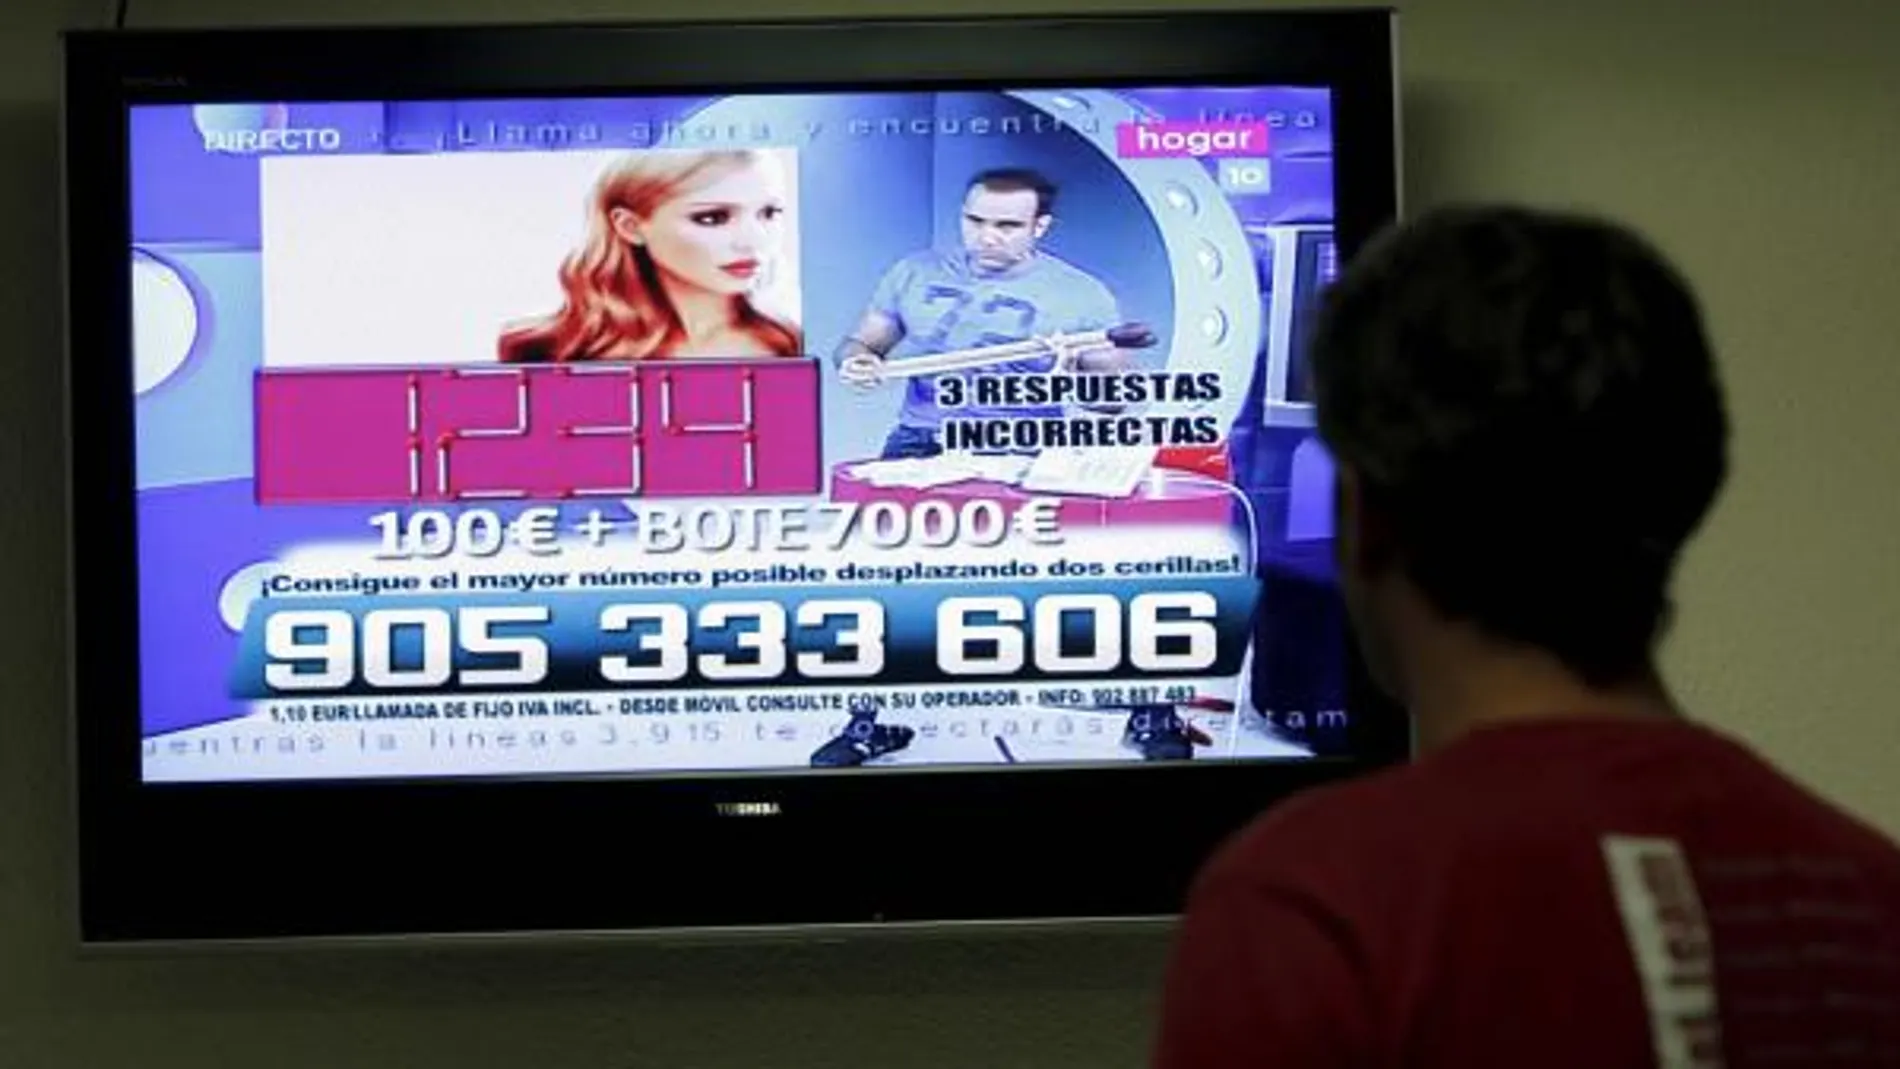 Autobuses informativos recorren España 20 días antes del «apagón»